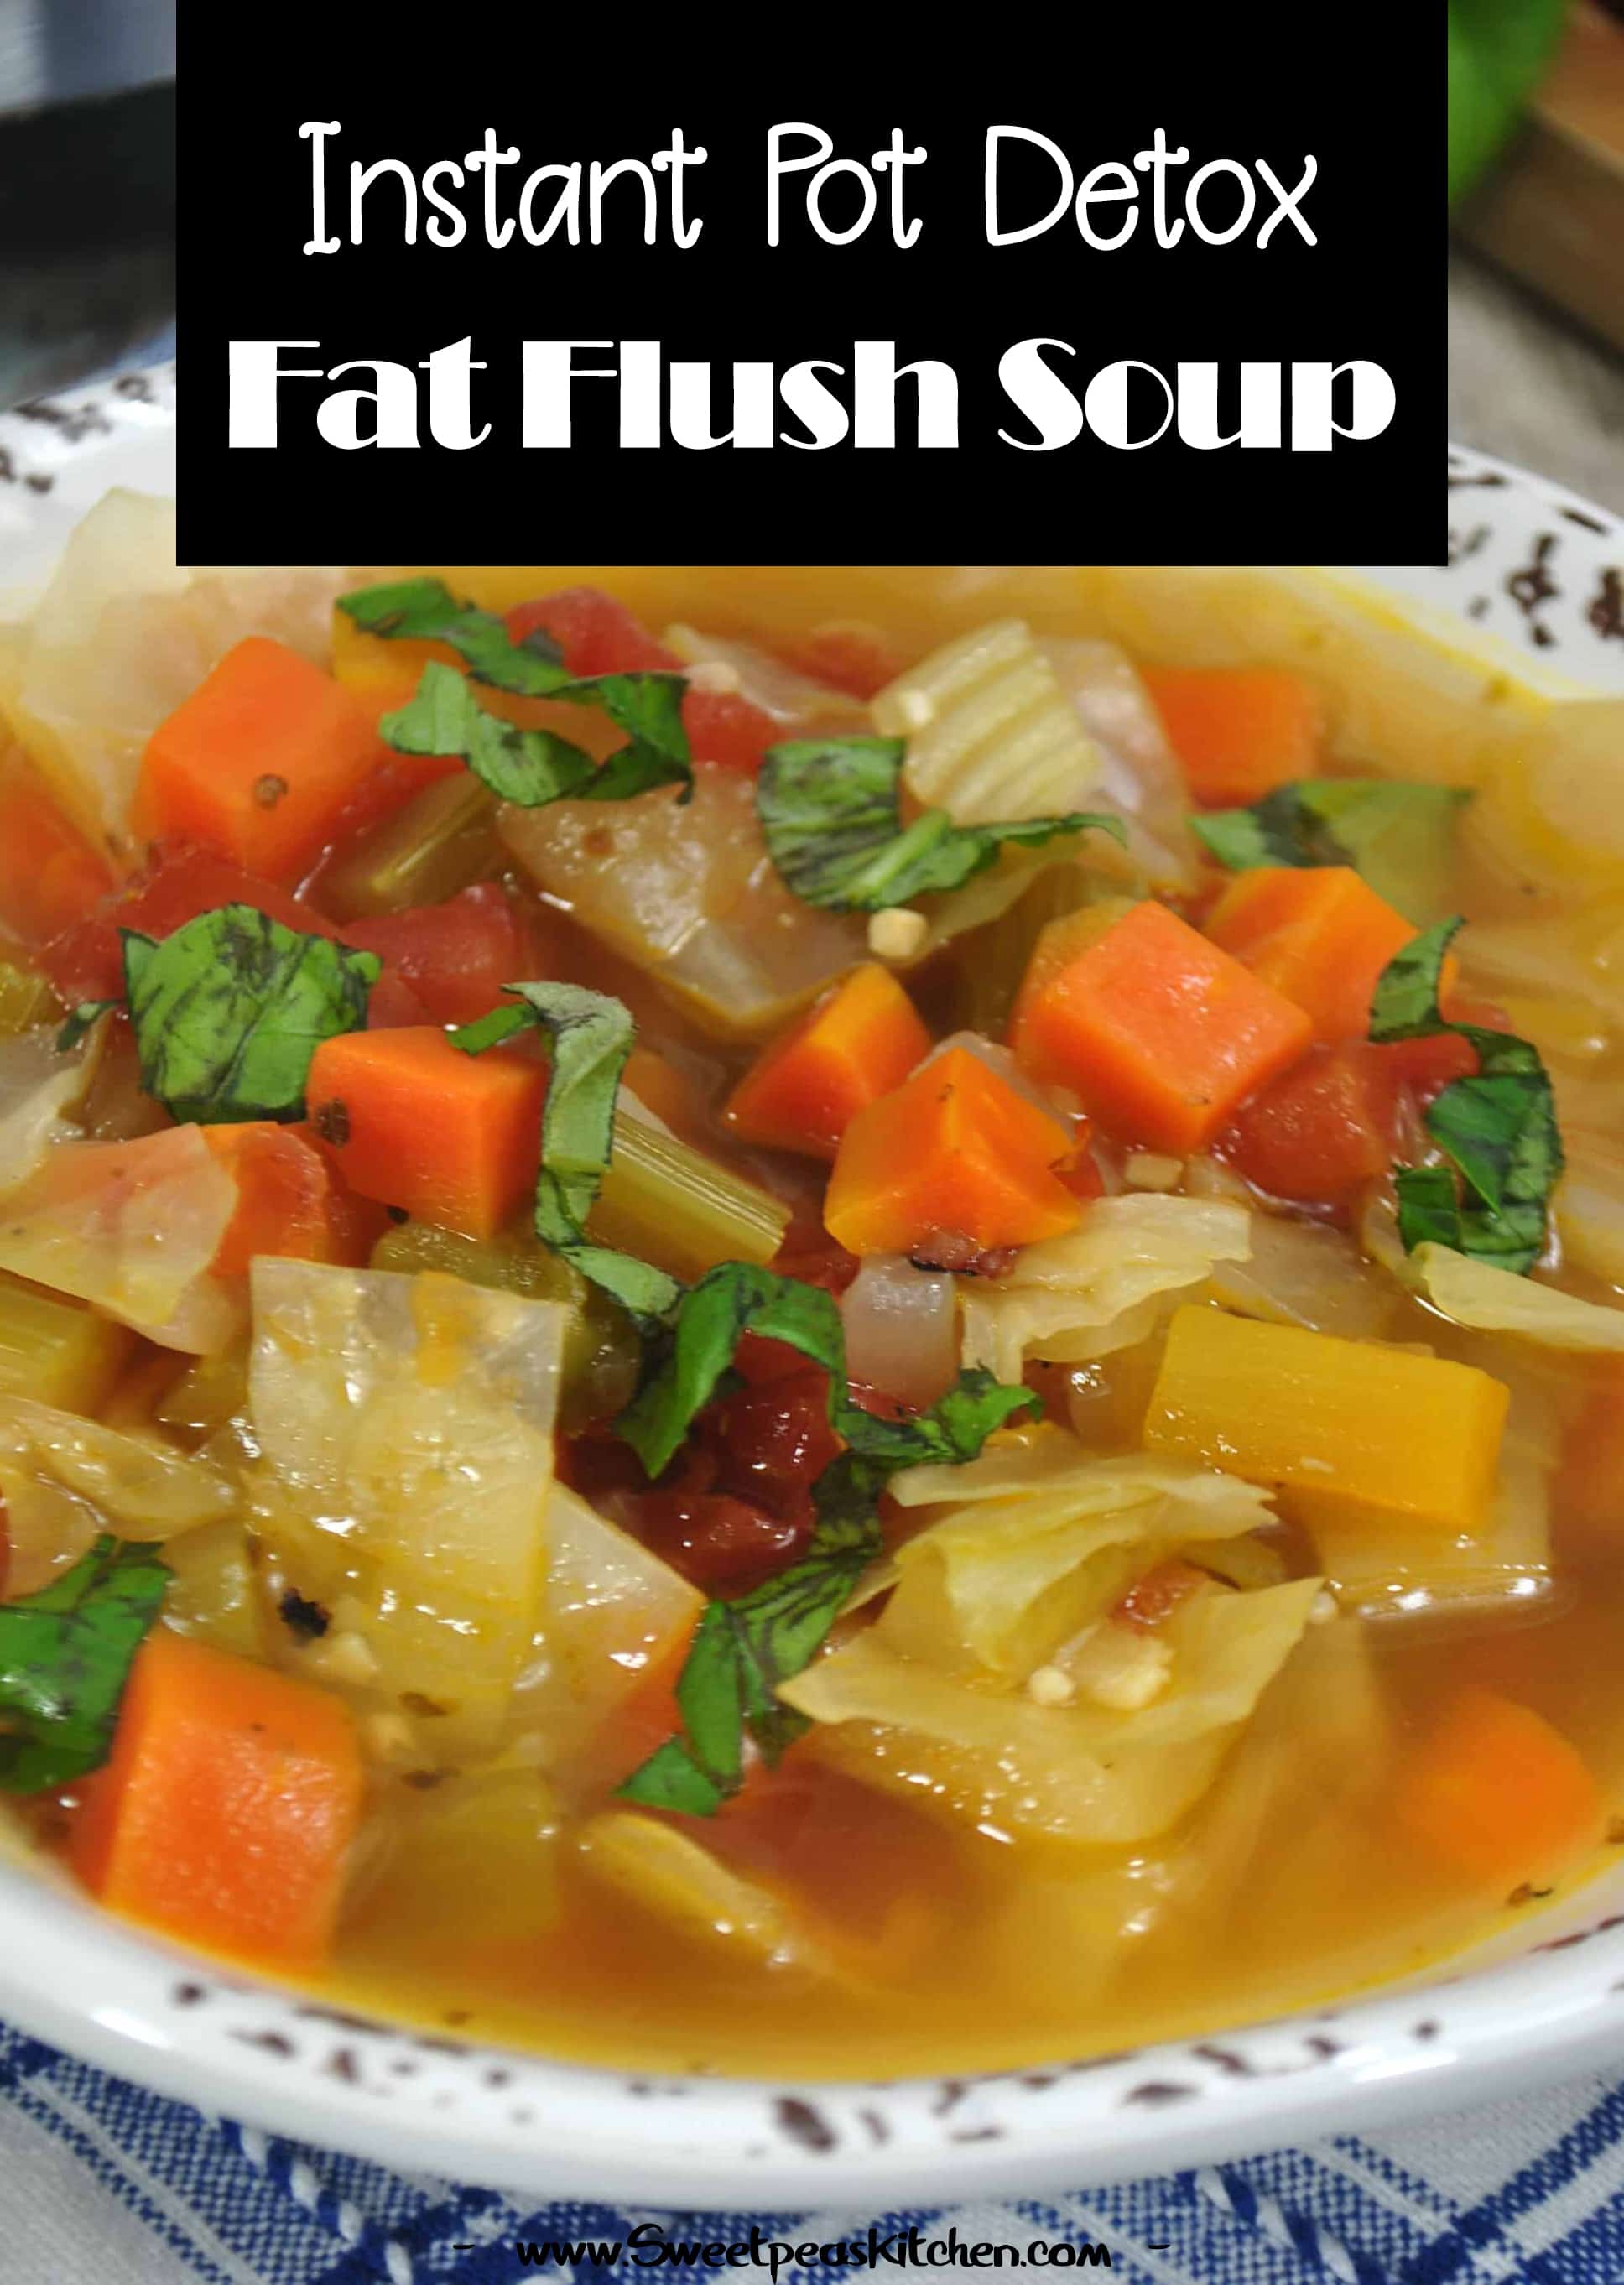 Fat Flush Soup